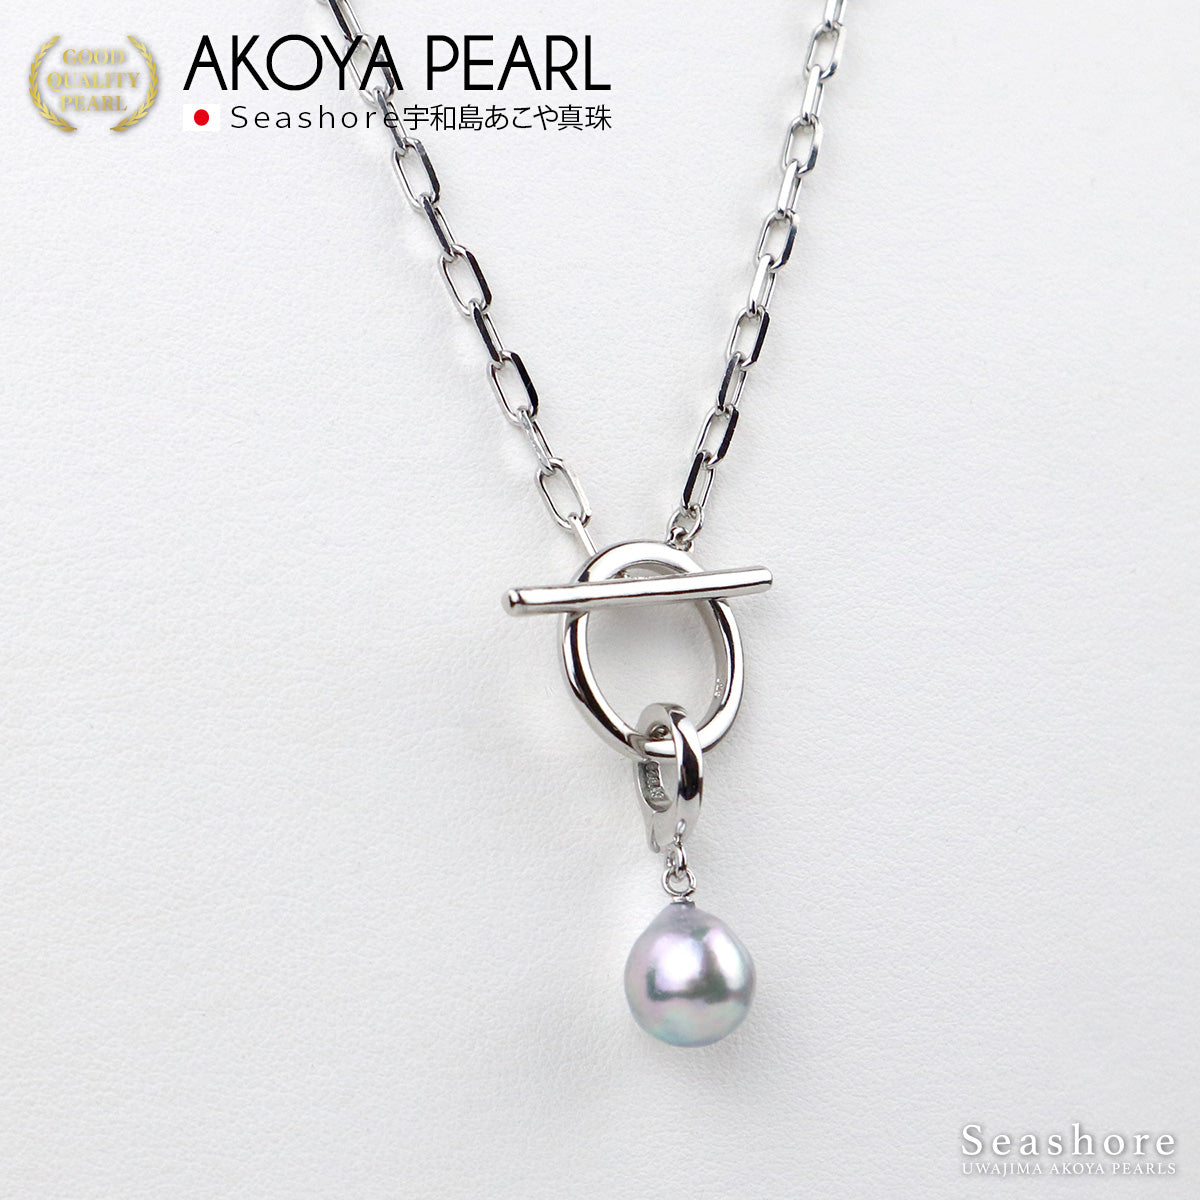 [自然蓝] 无色 Akoya 珍珠壁炉项链 [10-10.5 毫米] 不锈钢男女通用珍珠配件 (3984)